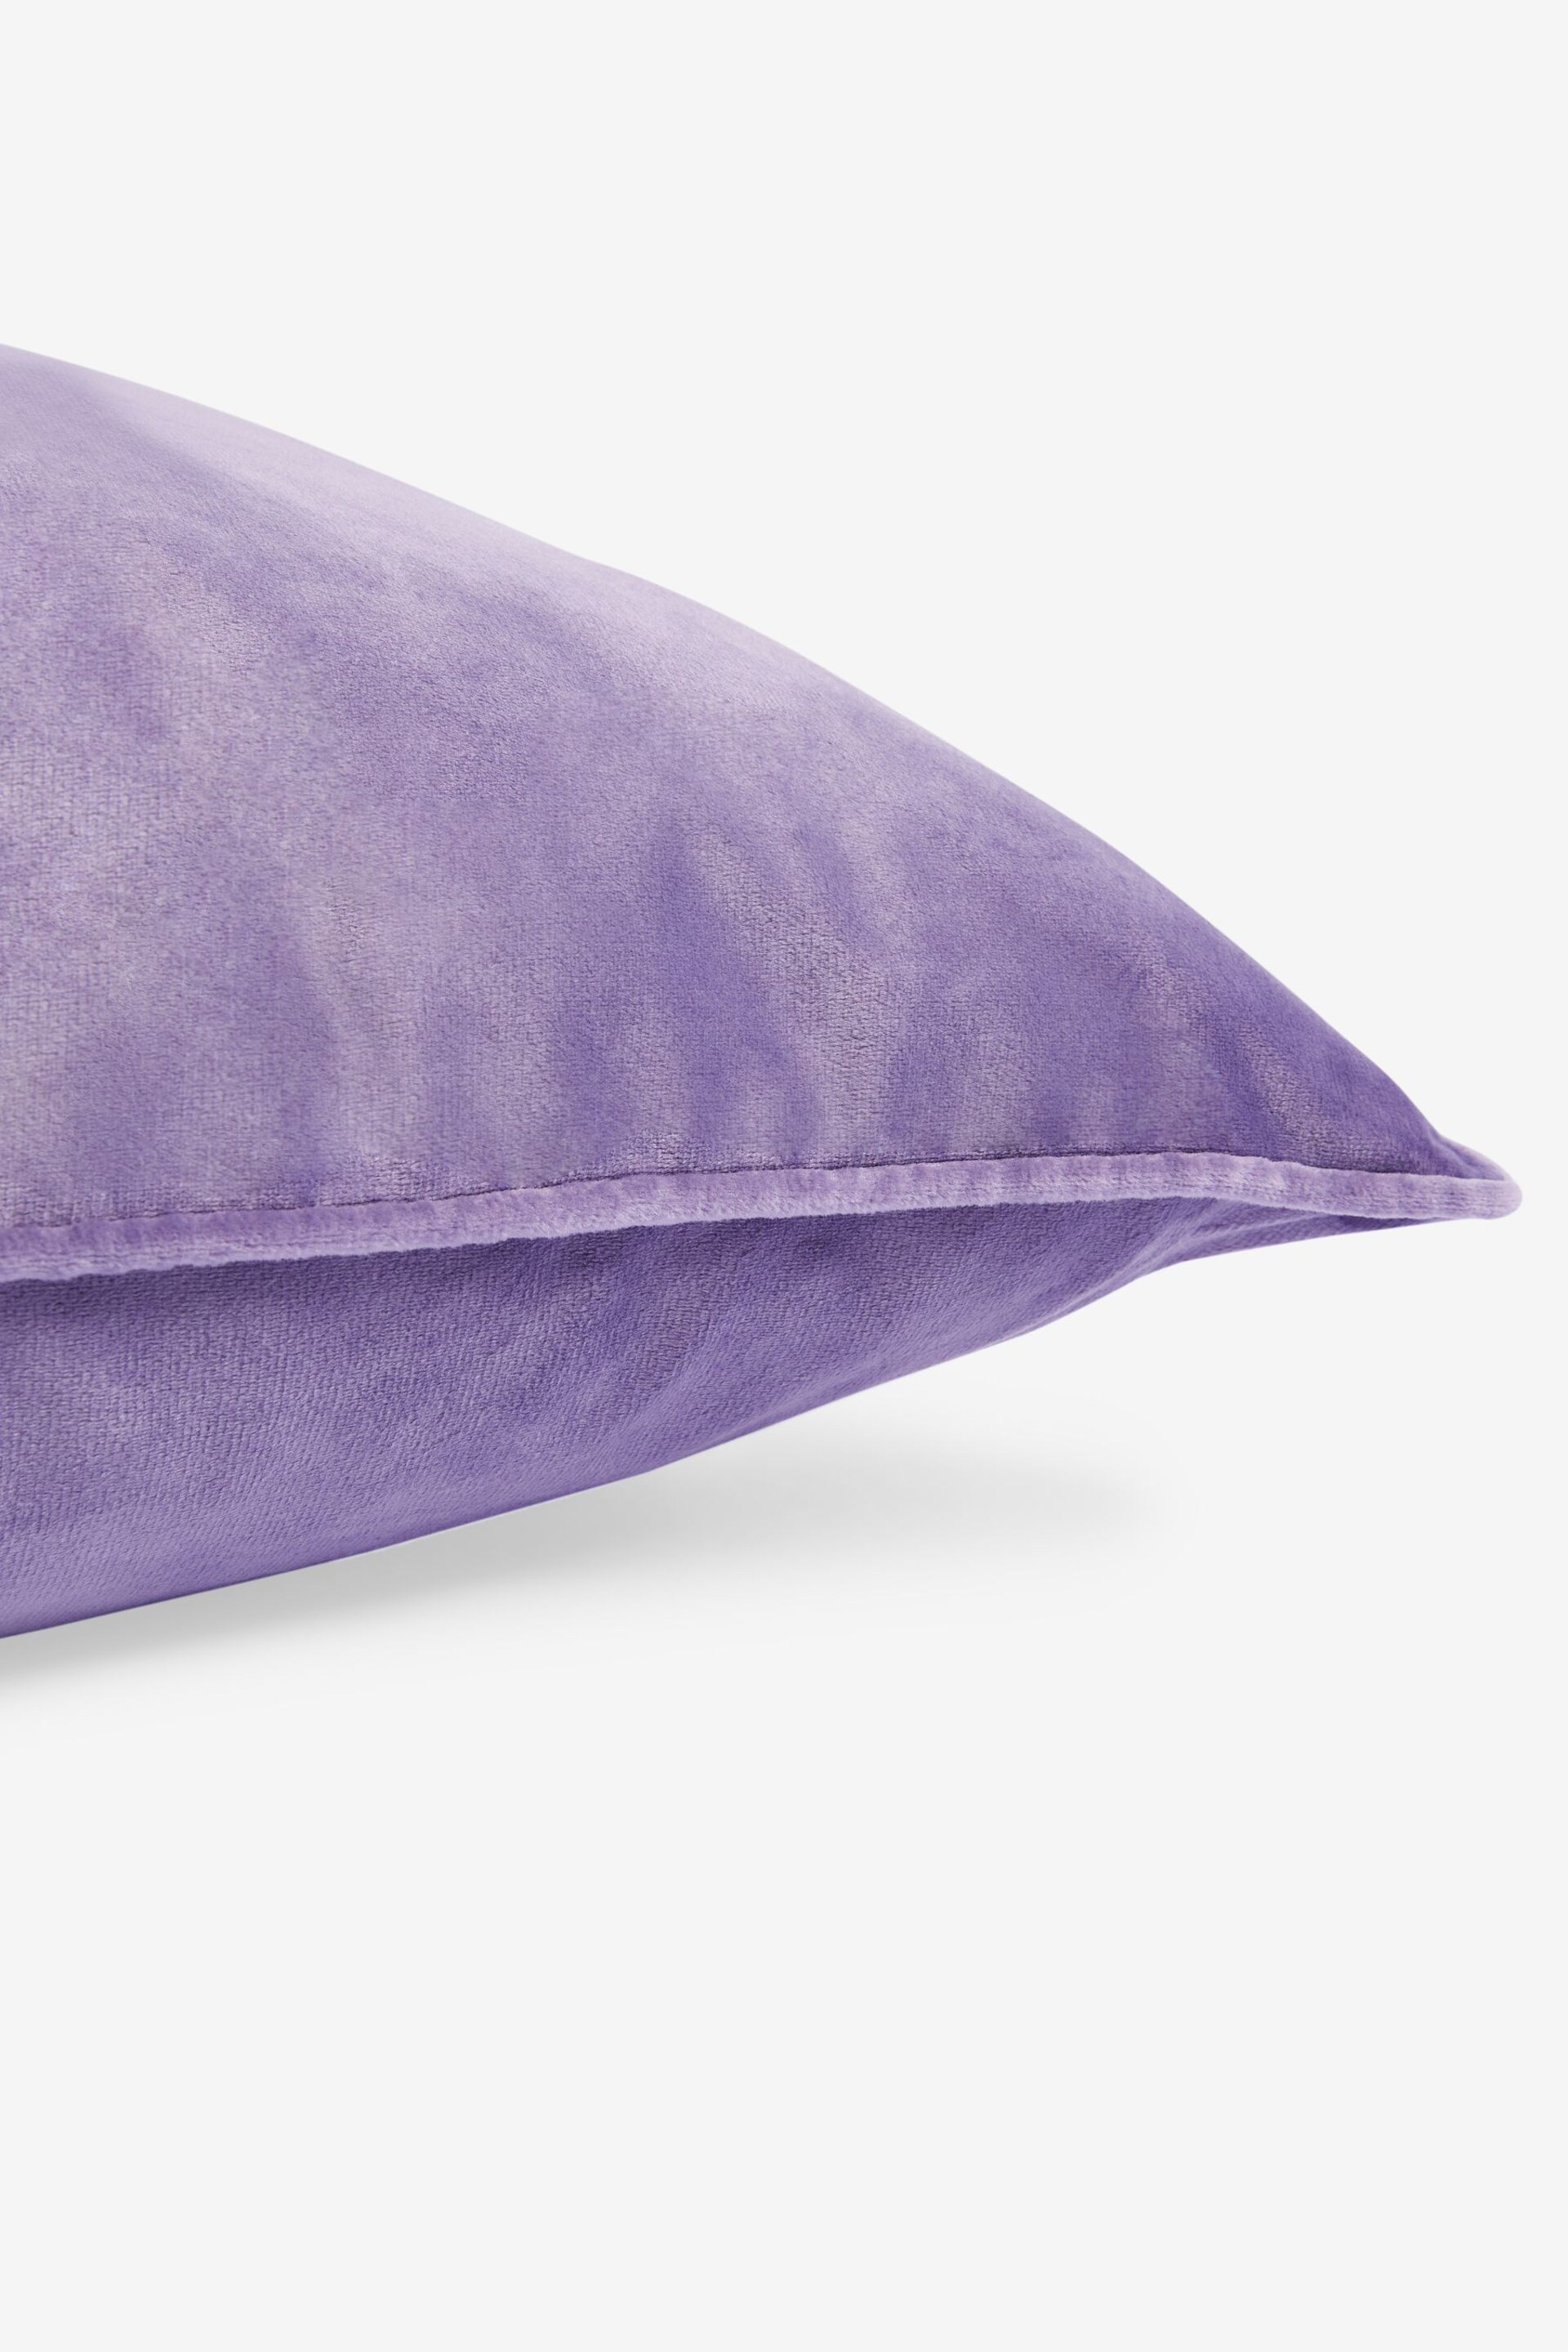 Lilac Purple 59 x 59cm Matte Velvet Cushion - Image 6 of 6